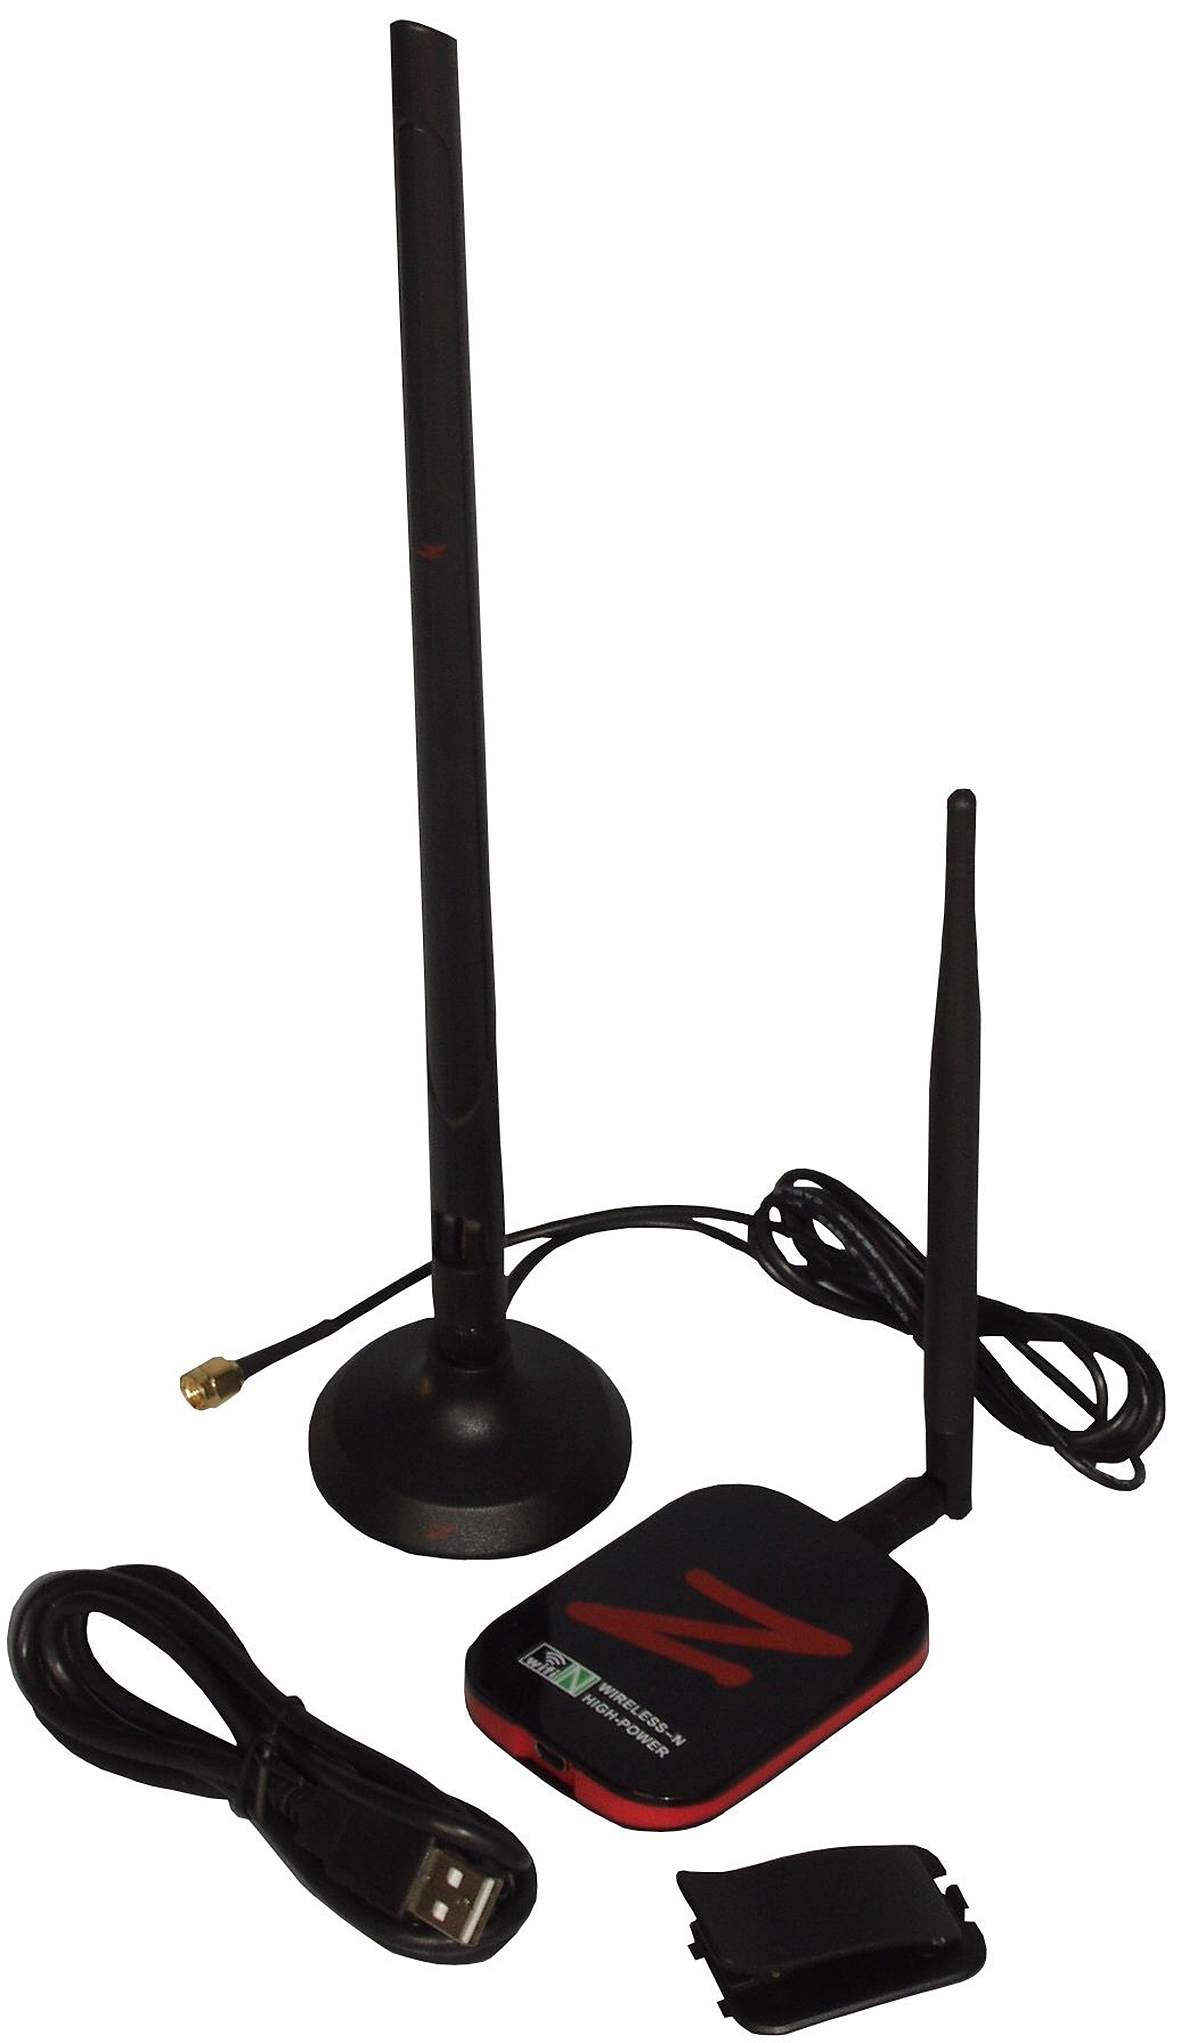 Zead Z-200 Wi-Fi USB Erweiterung mit Antenne - Ferropilot